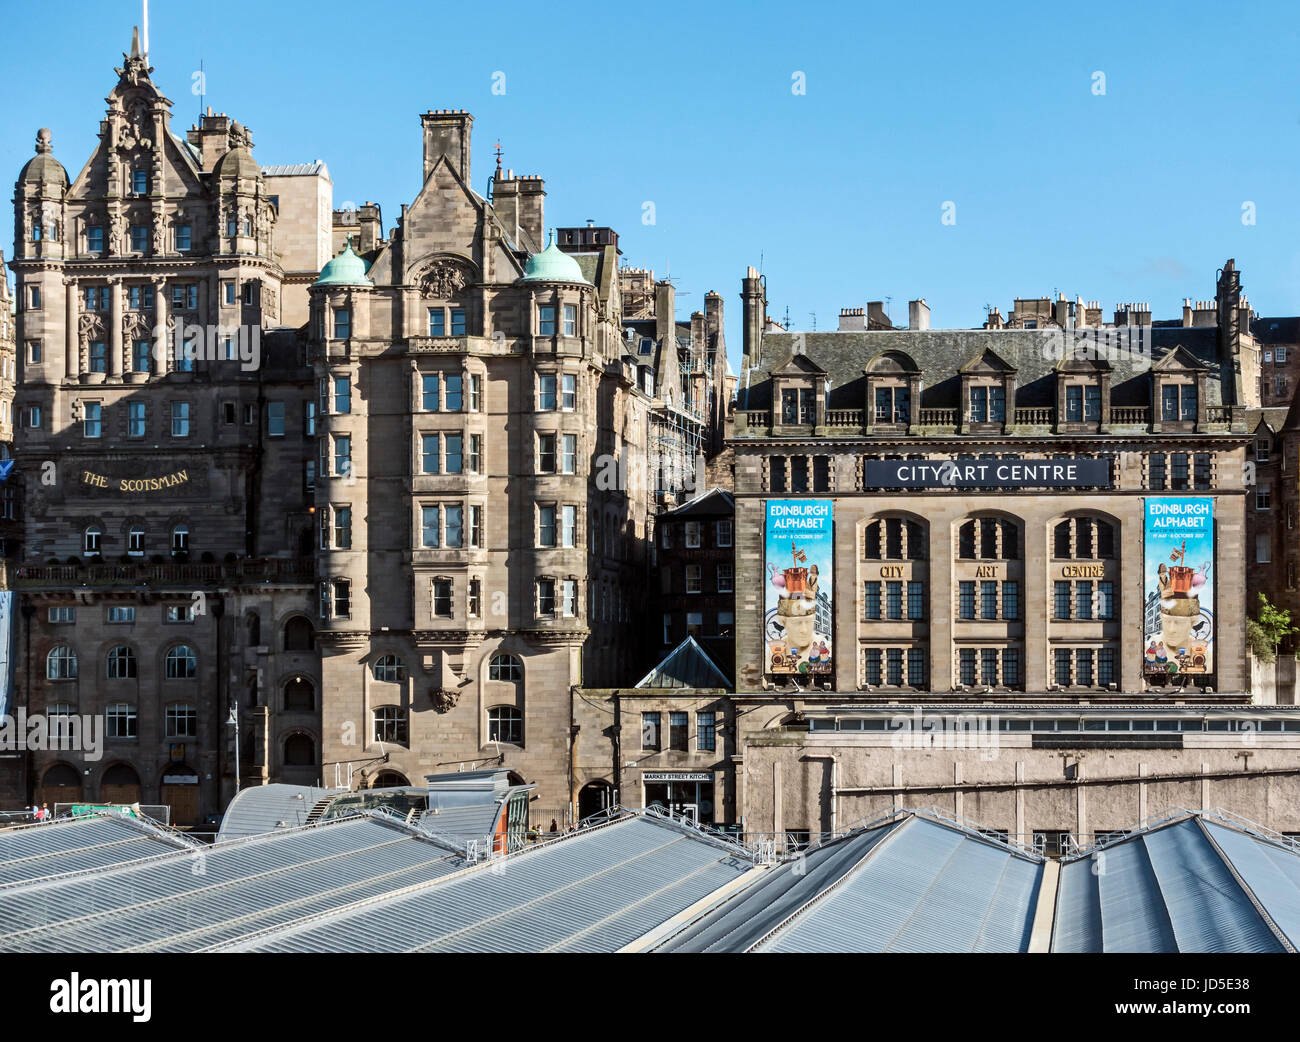 Der Scotsman Hotel von der Nordbrücke neben der City Art Centre in Market Street Edinburgh Schottland UK Stockfoto